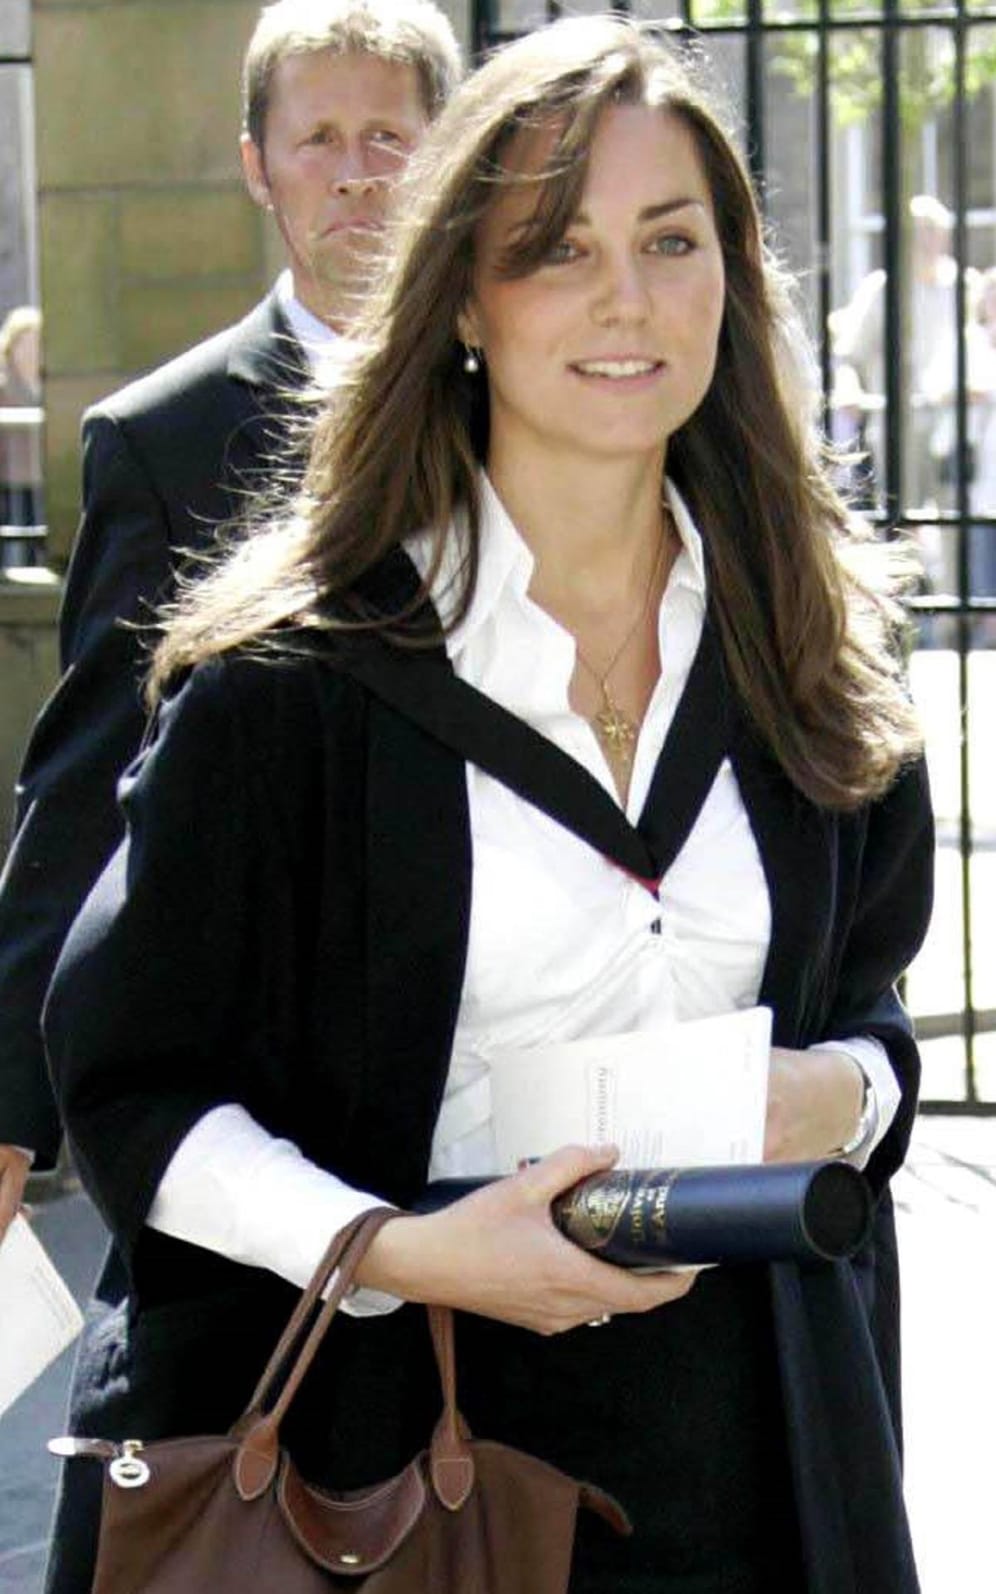 Juni 2005: Kate Middleton ist zu diesem Zeitpunkt bei ihrer Abschlussfeier an der Universität von St. Andrews in Schottland. Dort absolvierte sie das Studium der Kunstgeschichte.